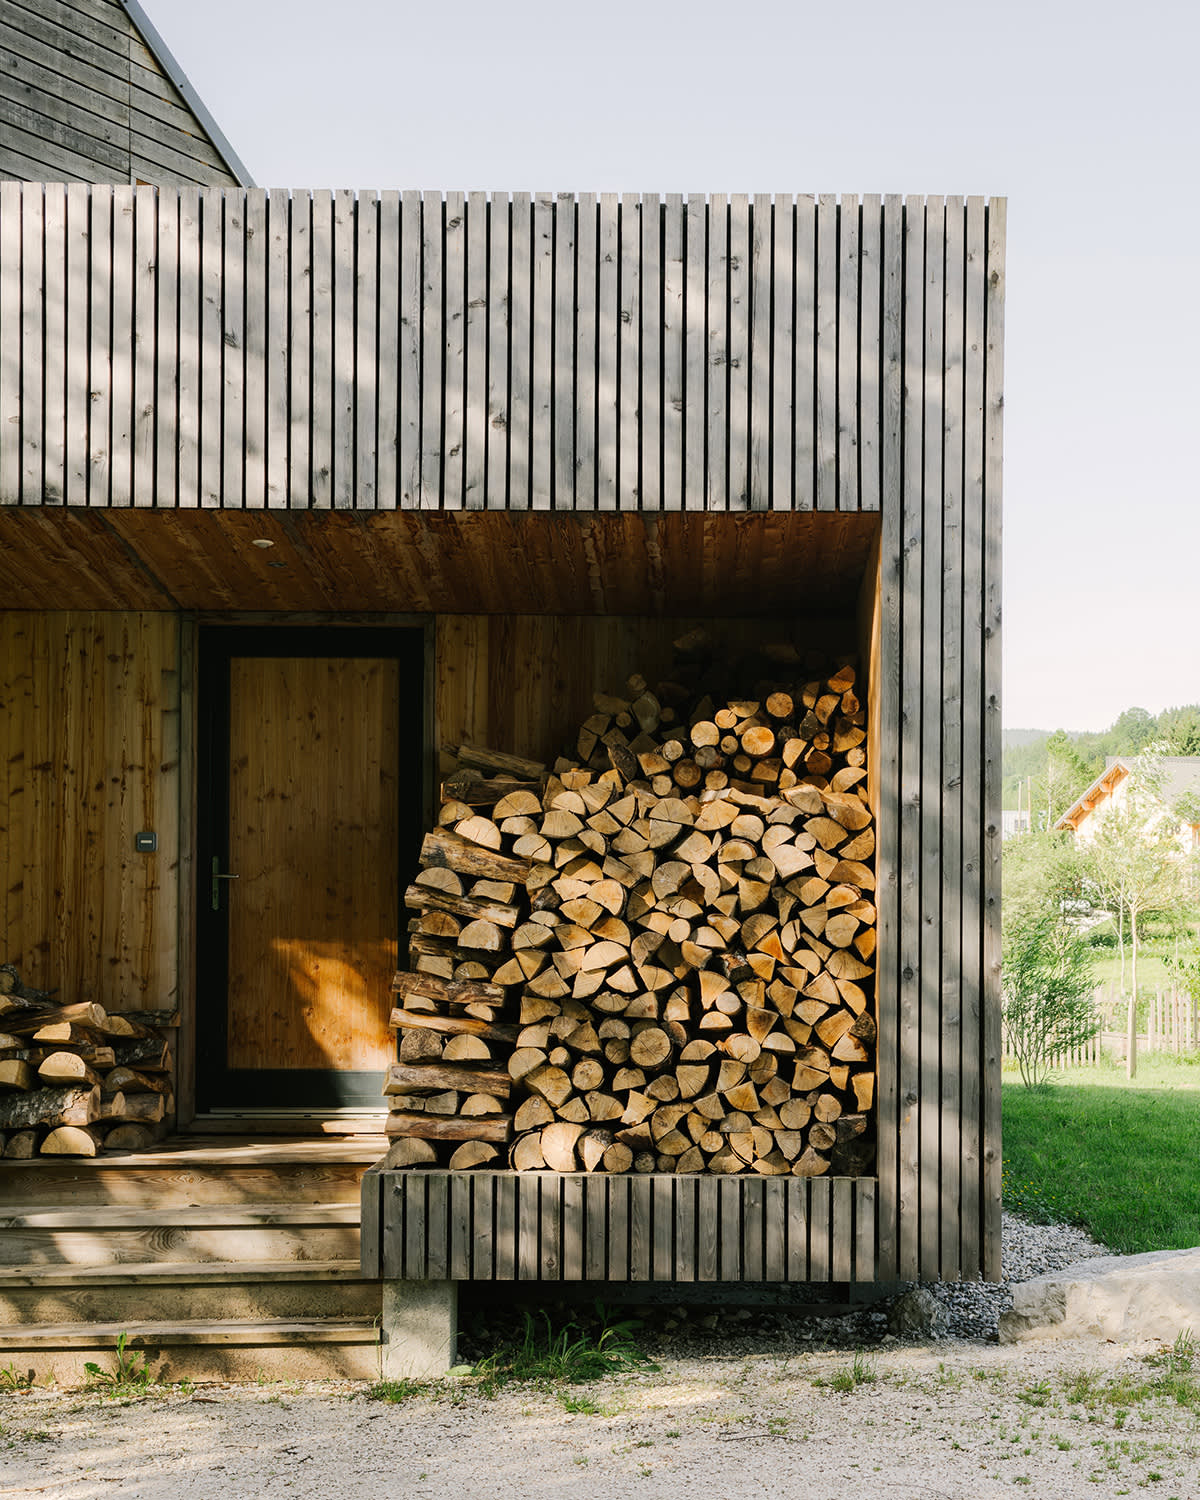 Bois de chauffage à l'entrée d'une maison en bois